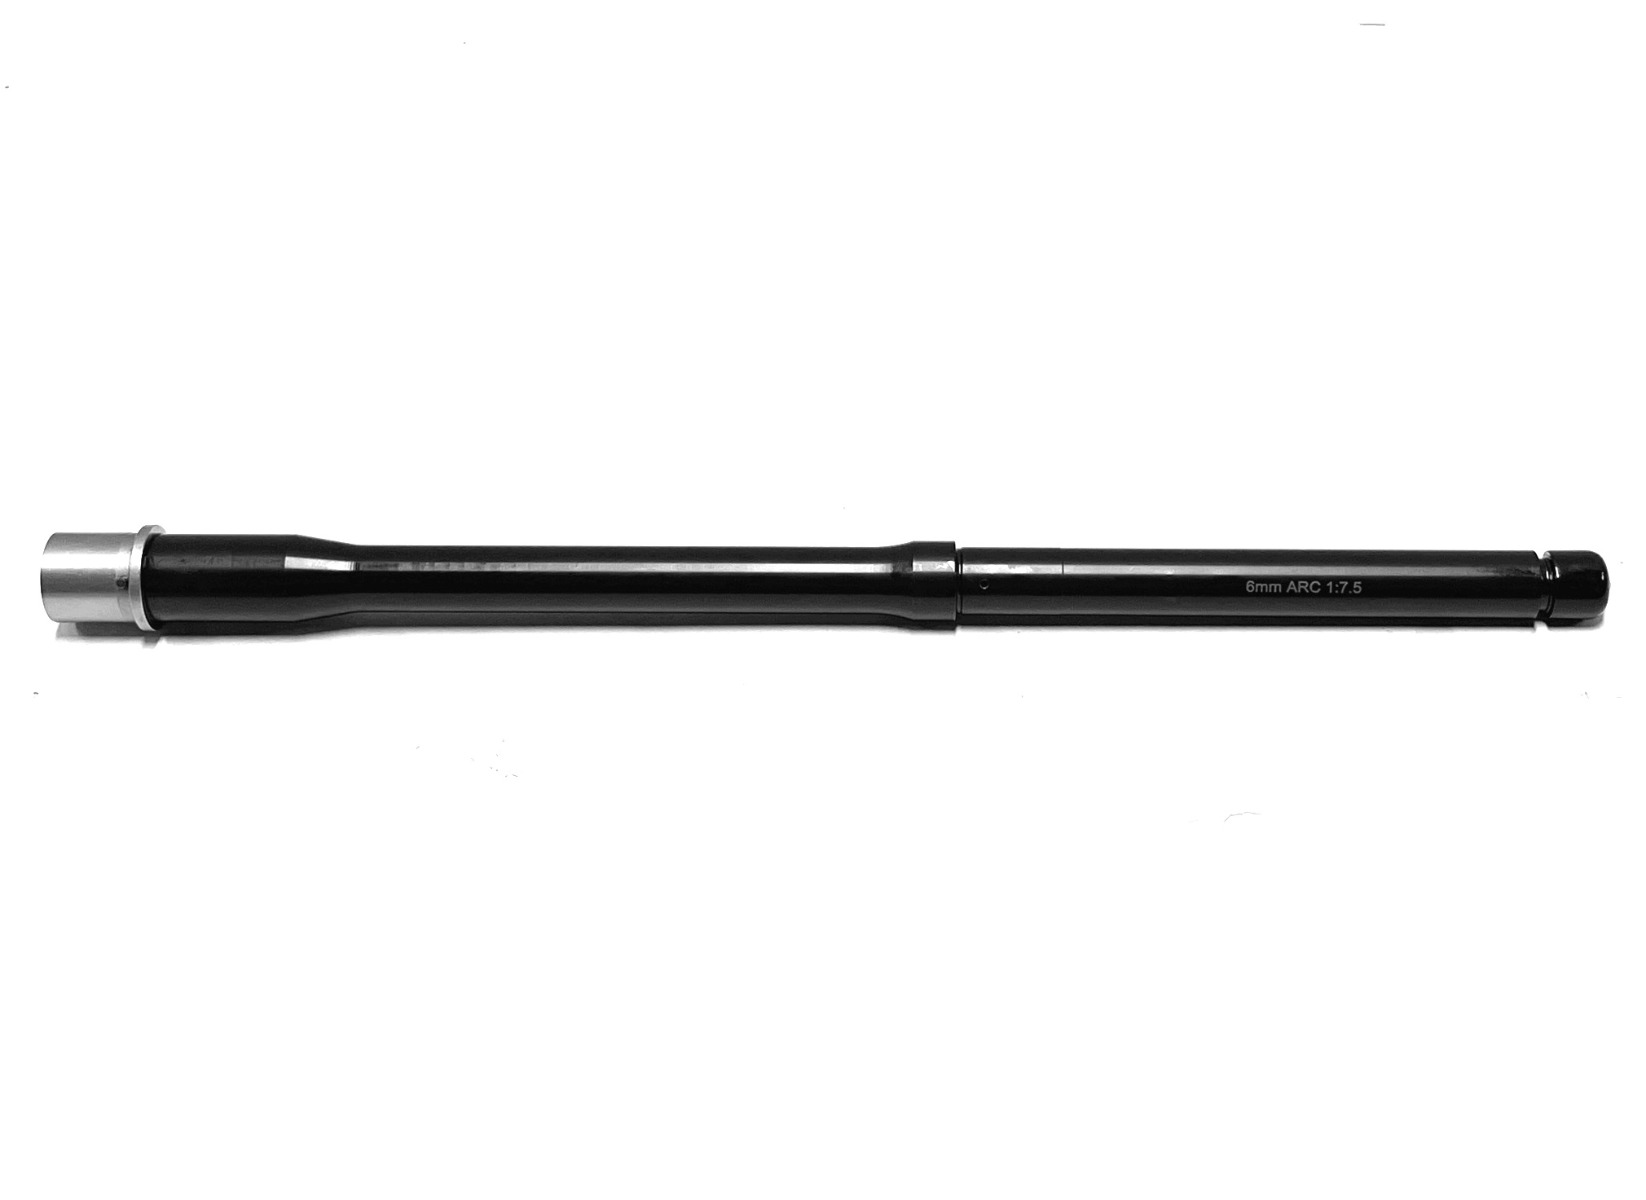 Tactical Kinetics 16 inch AR-15 6mm ARC Melonite Barrel